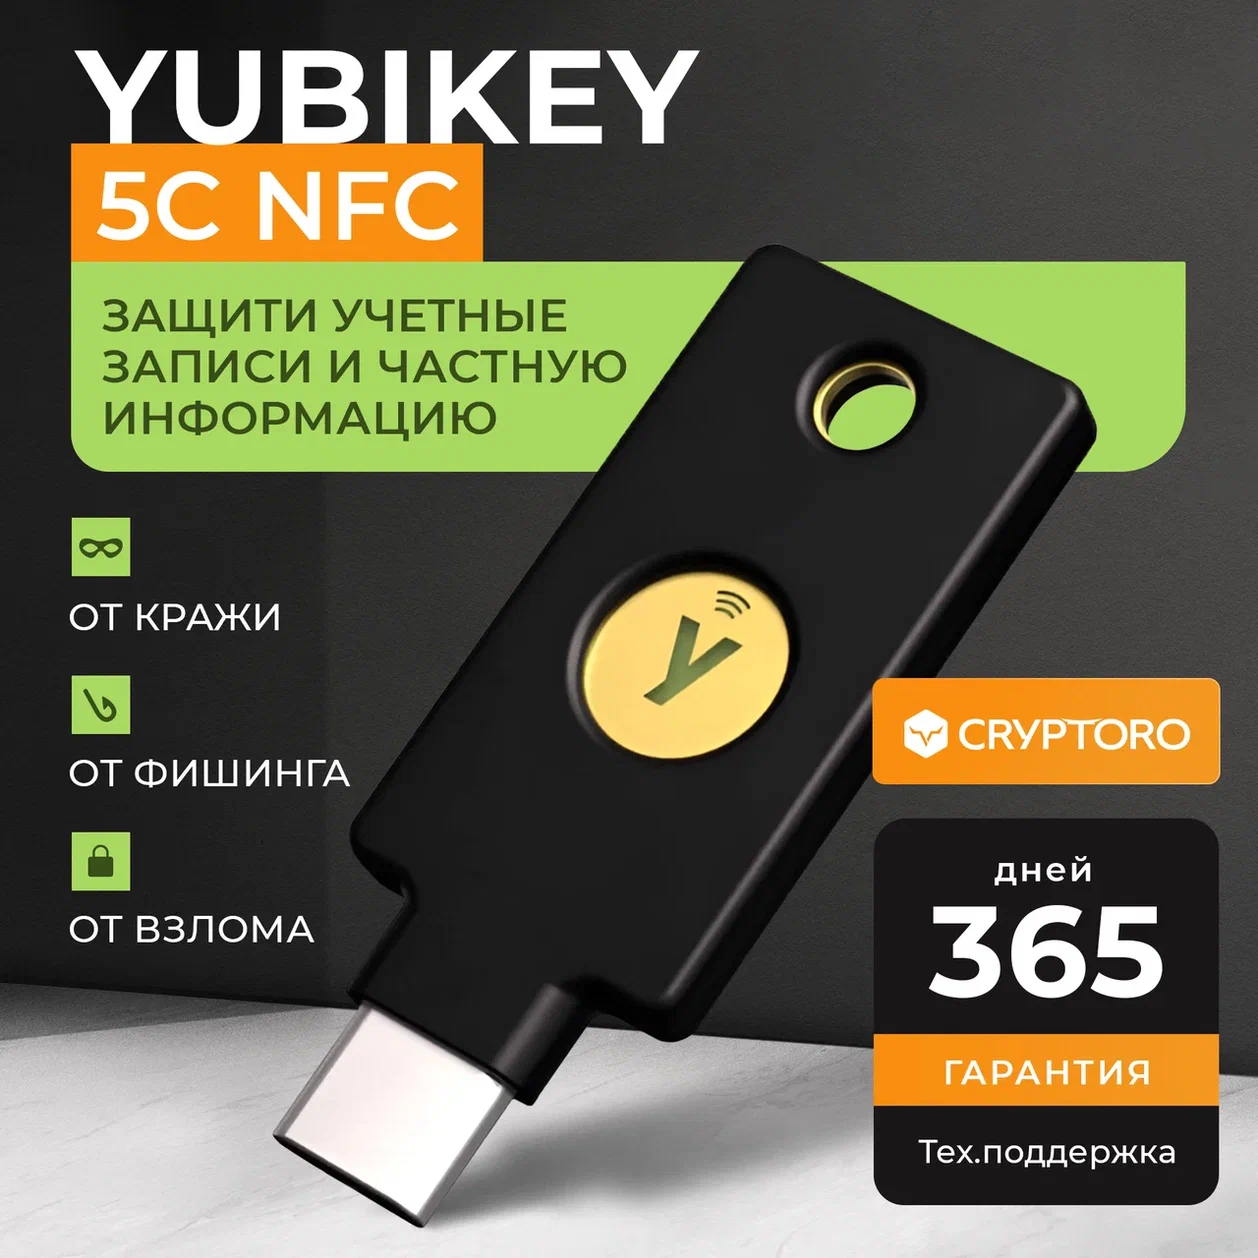 Yubikey 5C NFC - аппаратный ключ увеличивающий уровень безопасноти ваших данных